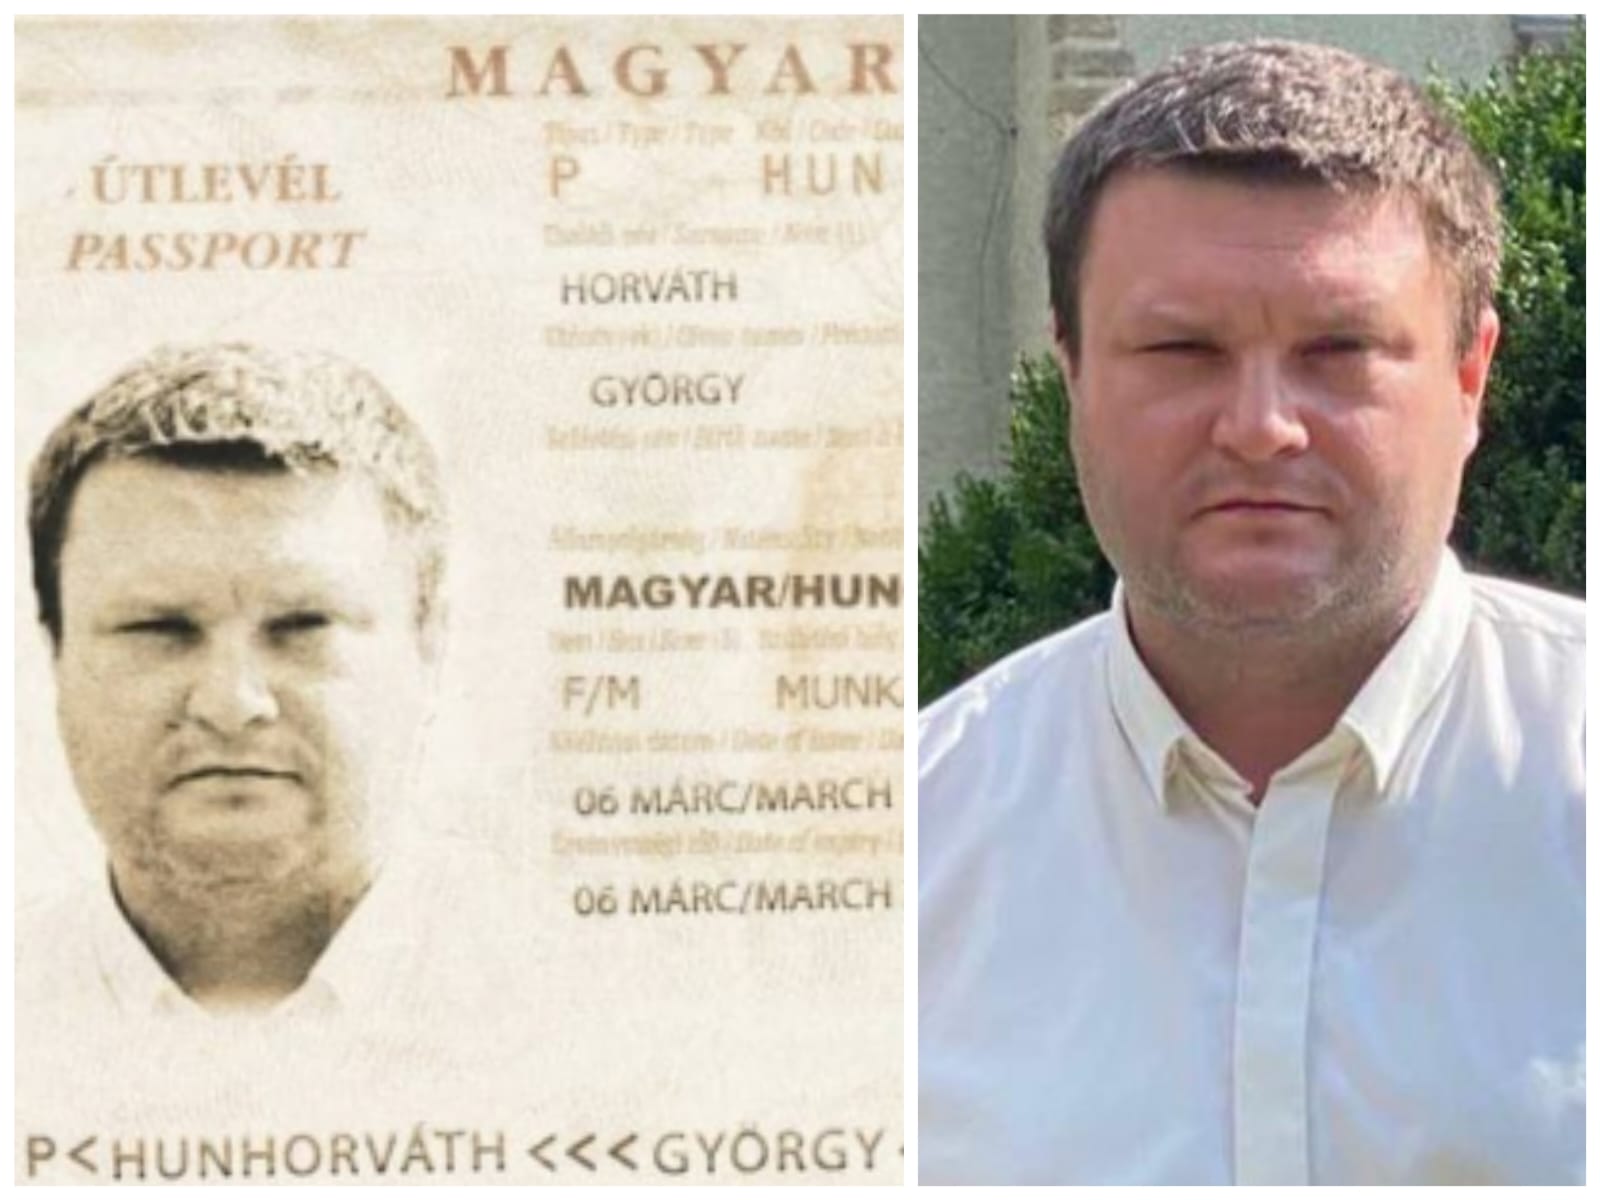 Мукачівський сайт опублікував "фотошоп" угорського "паспорта" кандидата в заступники голови Закарпатської ОДА Горвата